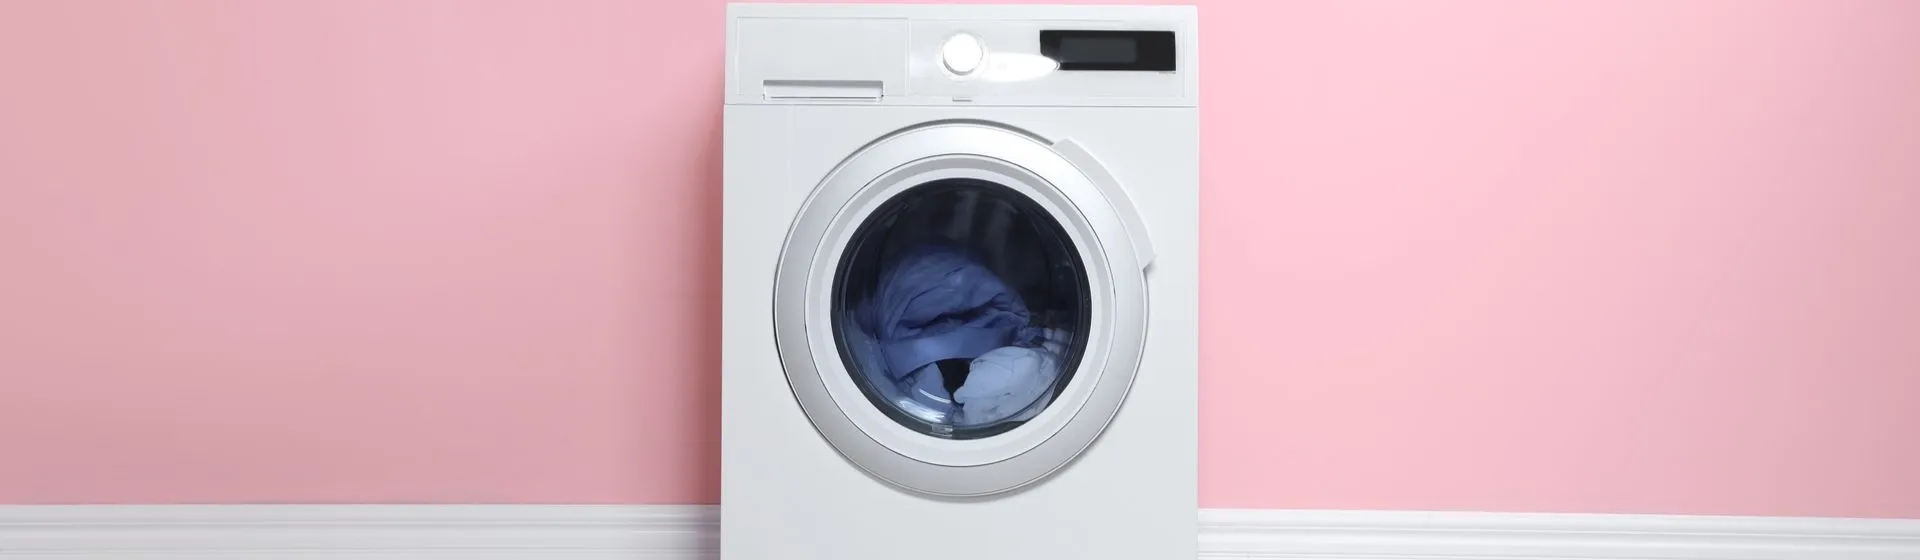 Como usar máquina de lavar? Confira o passo a passo